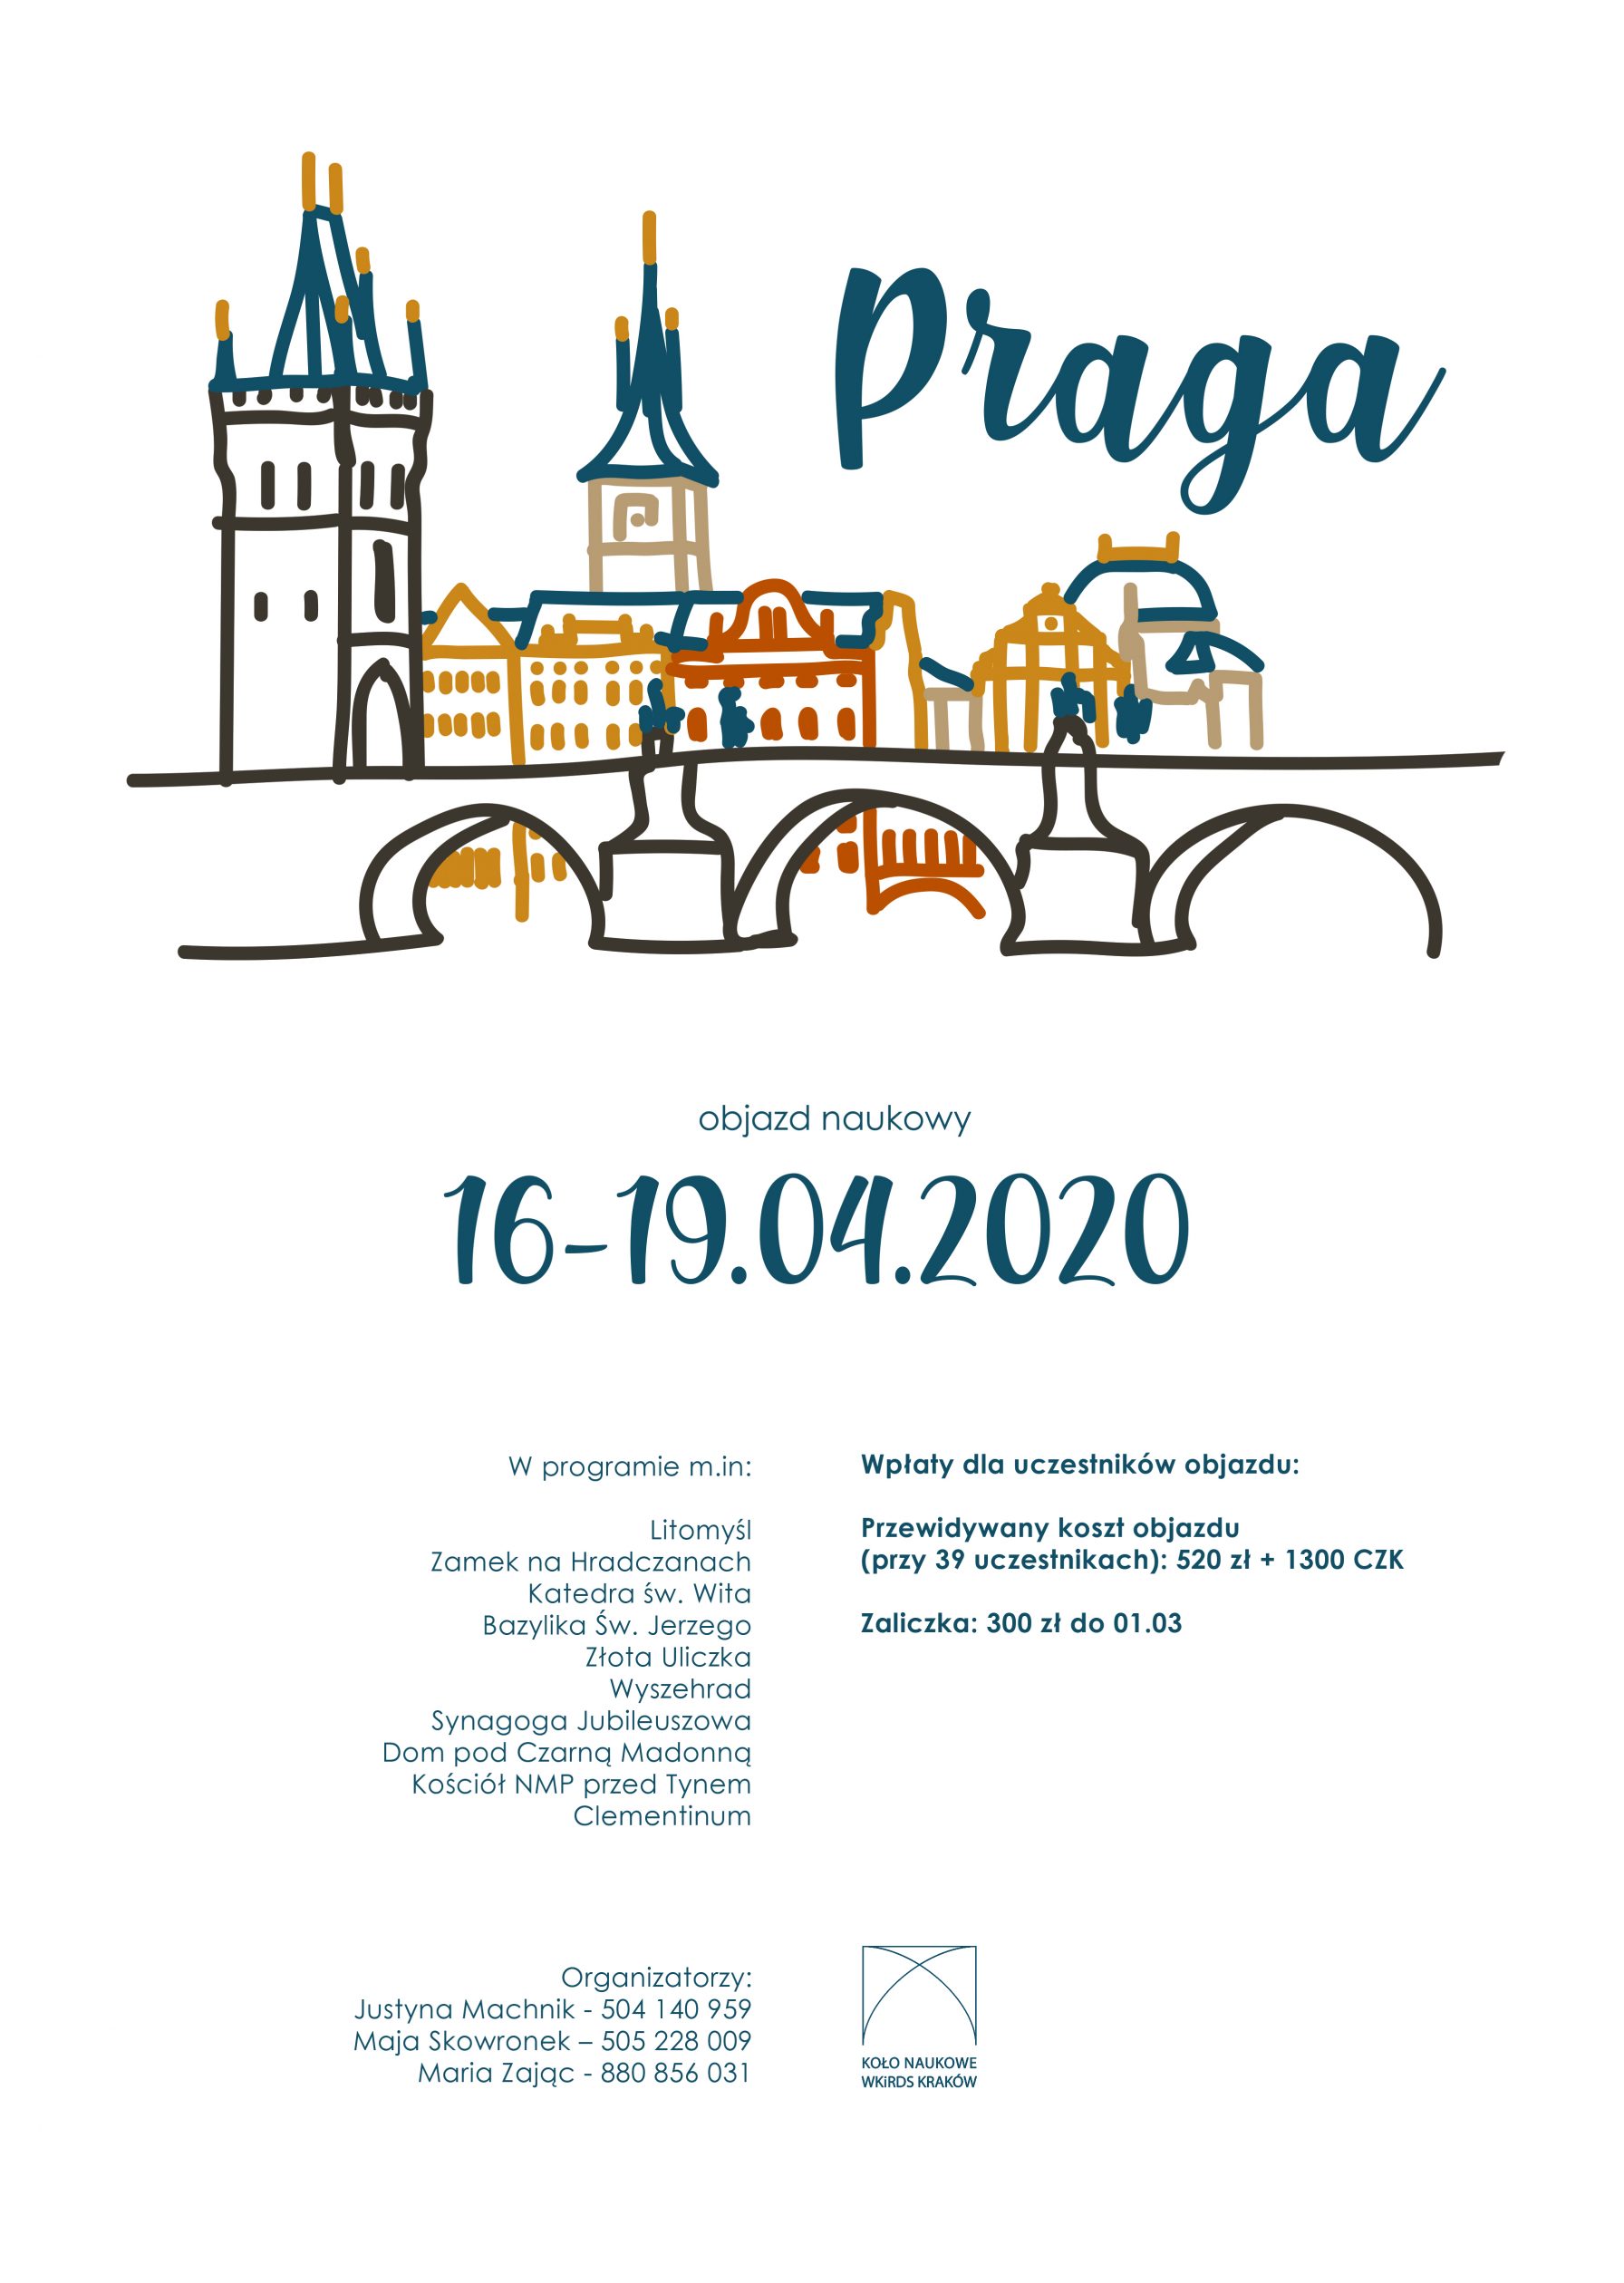 Objazd naukowy do Pragi